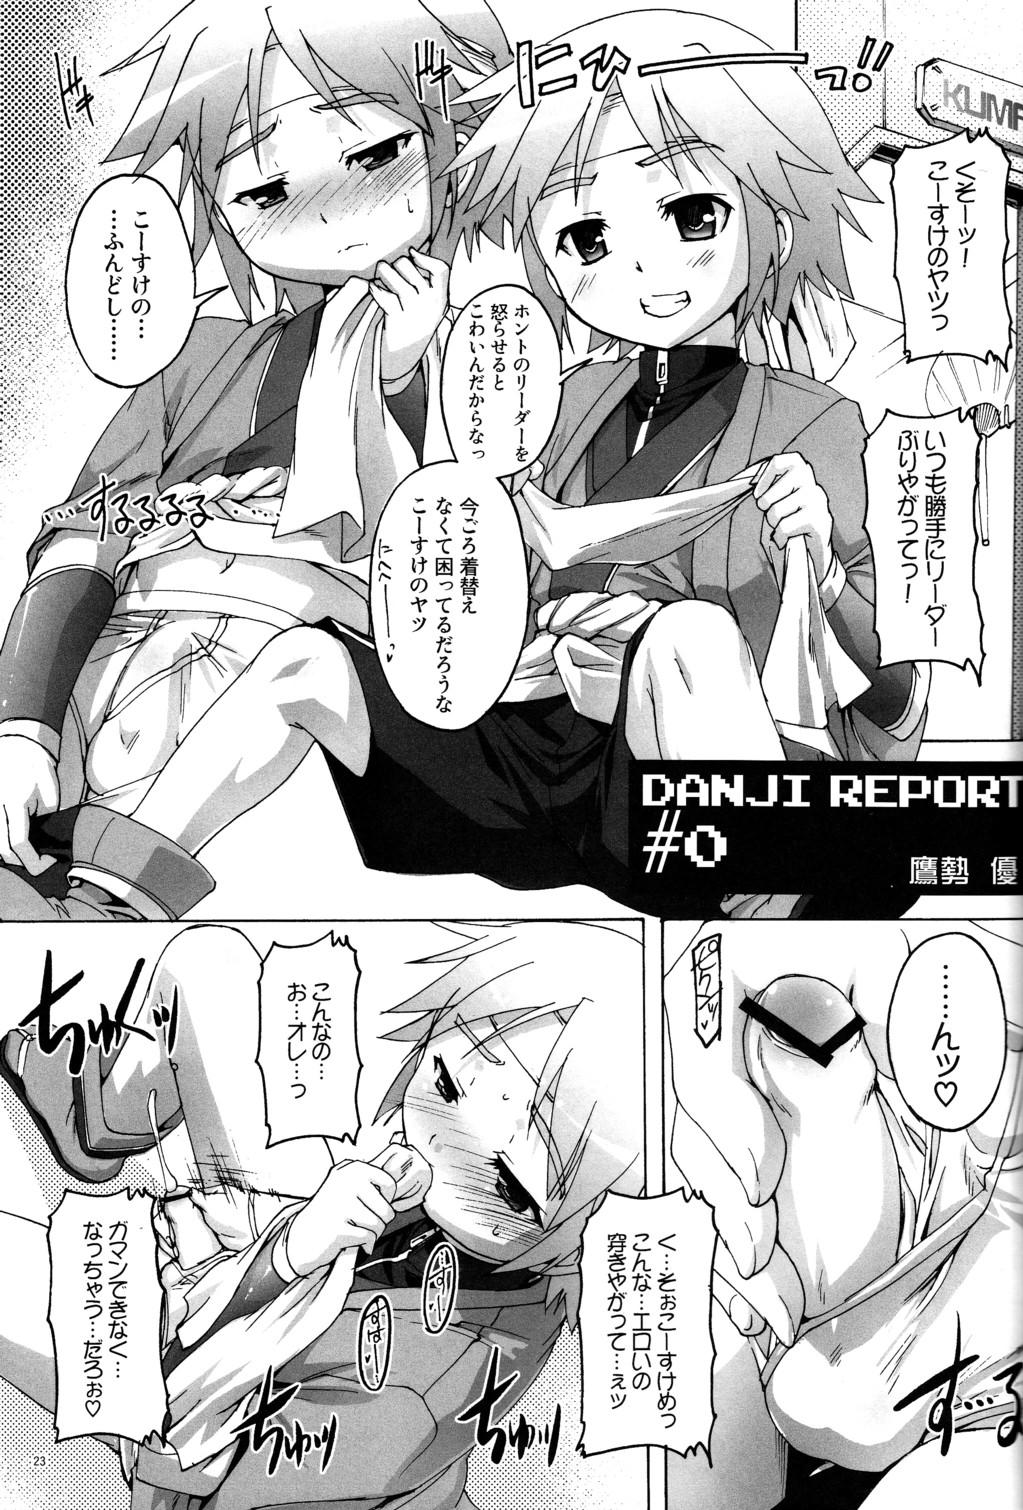 Danji Report: REVIEW 24